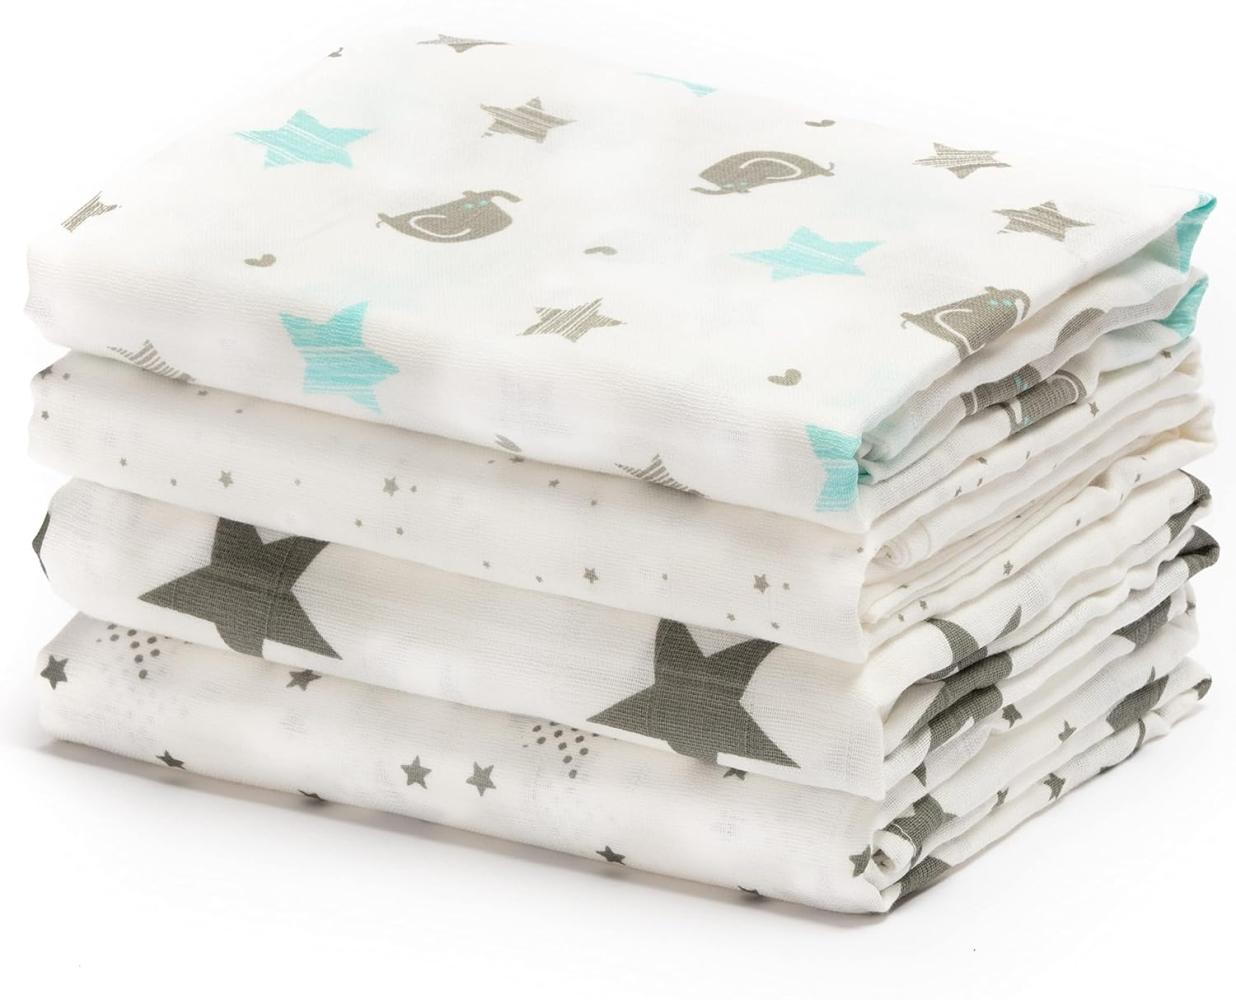 CuddleBug „Sternennacht“ 4 Stück 120 cm x 120 cm Lange Baby Decke für Babys | 5 Farbkollektionen | Musselin Decke | Babydecke Mädchen oder Jungen | Babydecke Baumwolle Bild 1